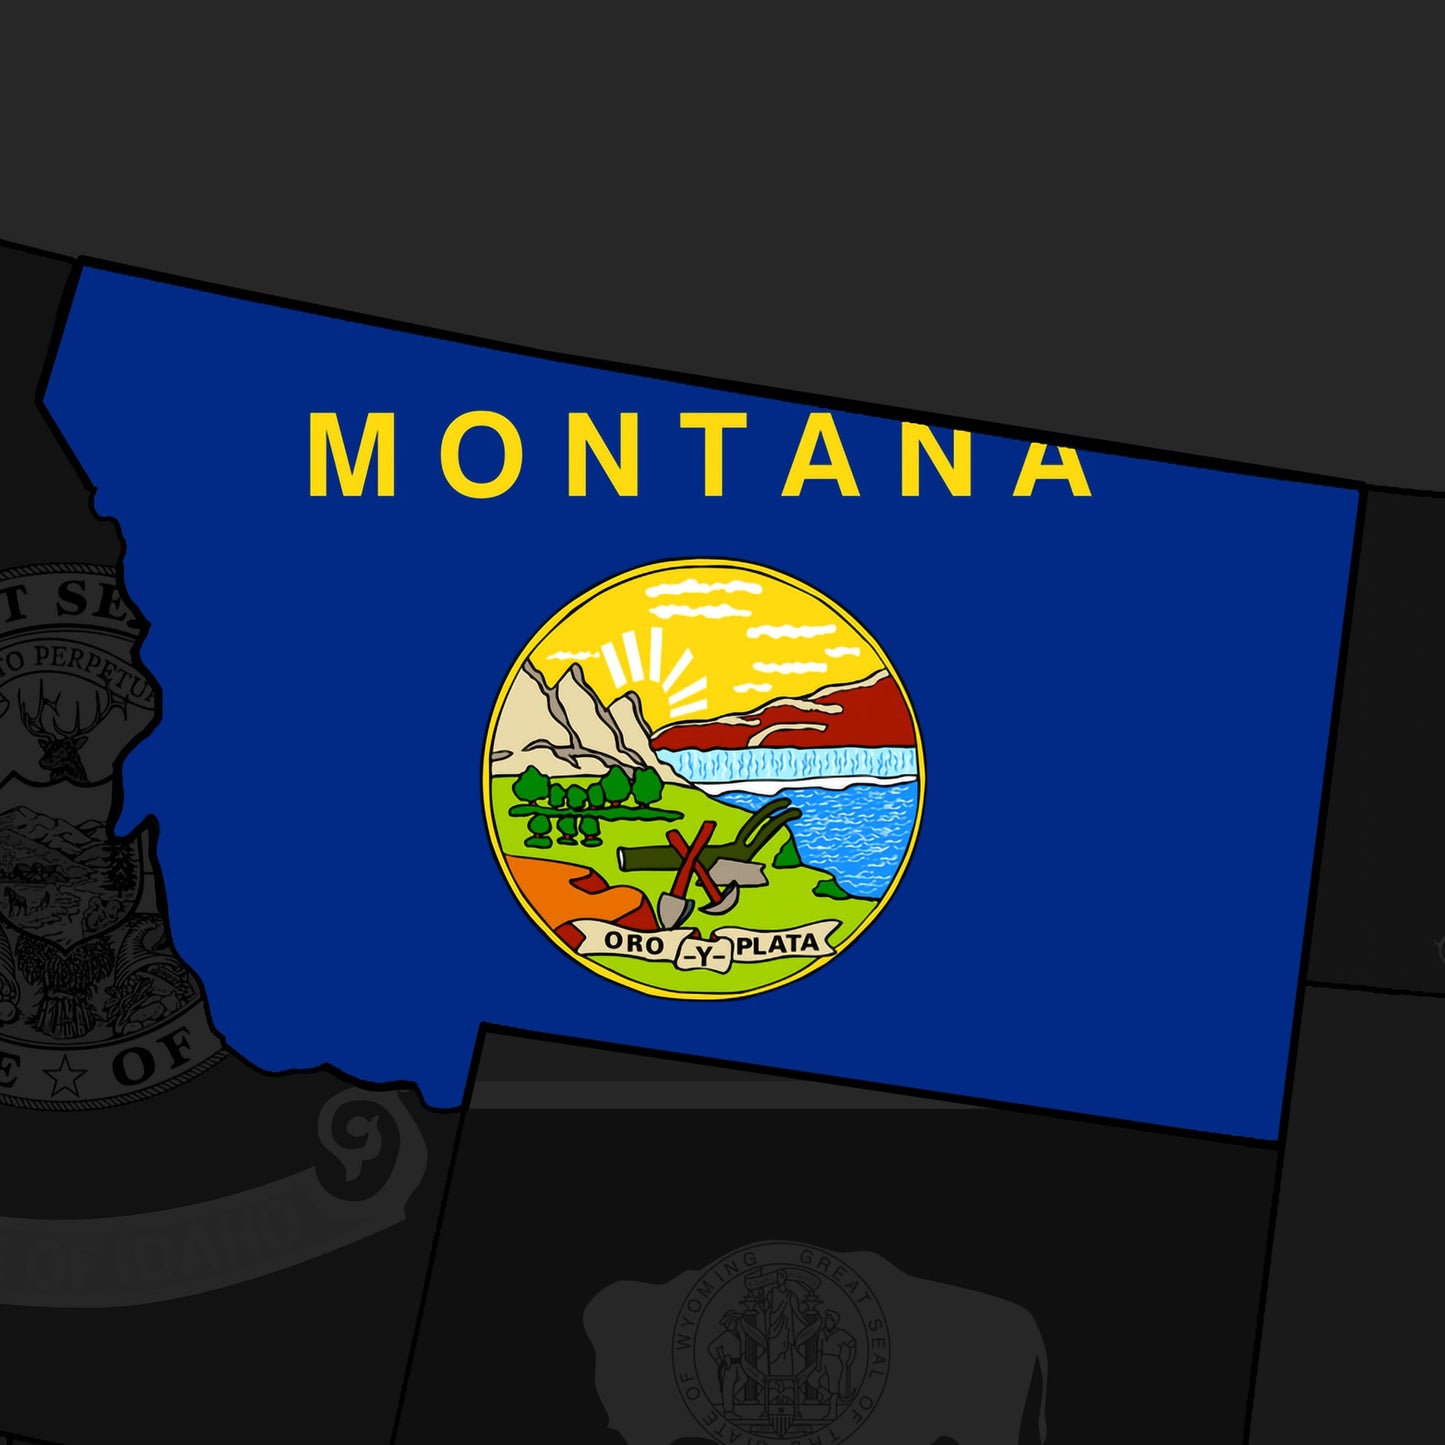 Montana Mobile Home Parks (180+)